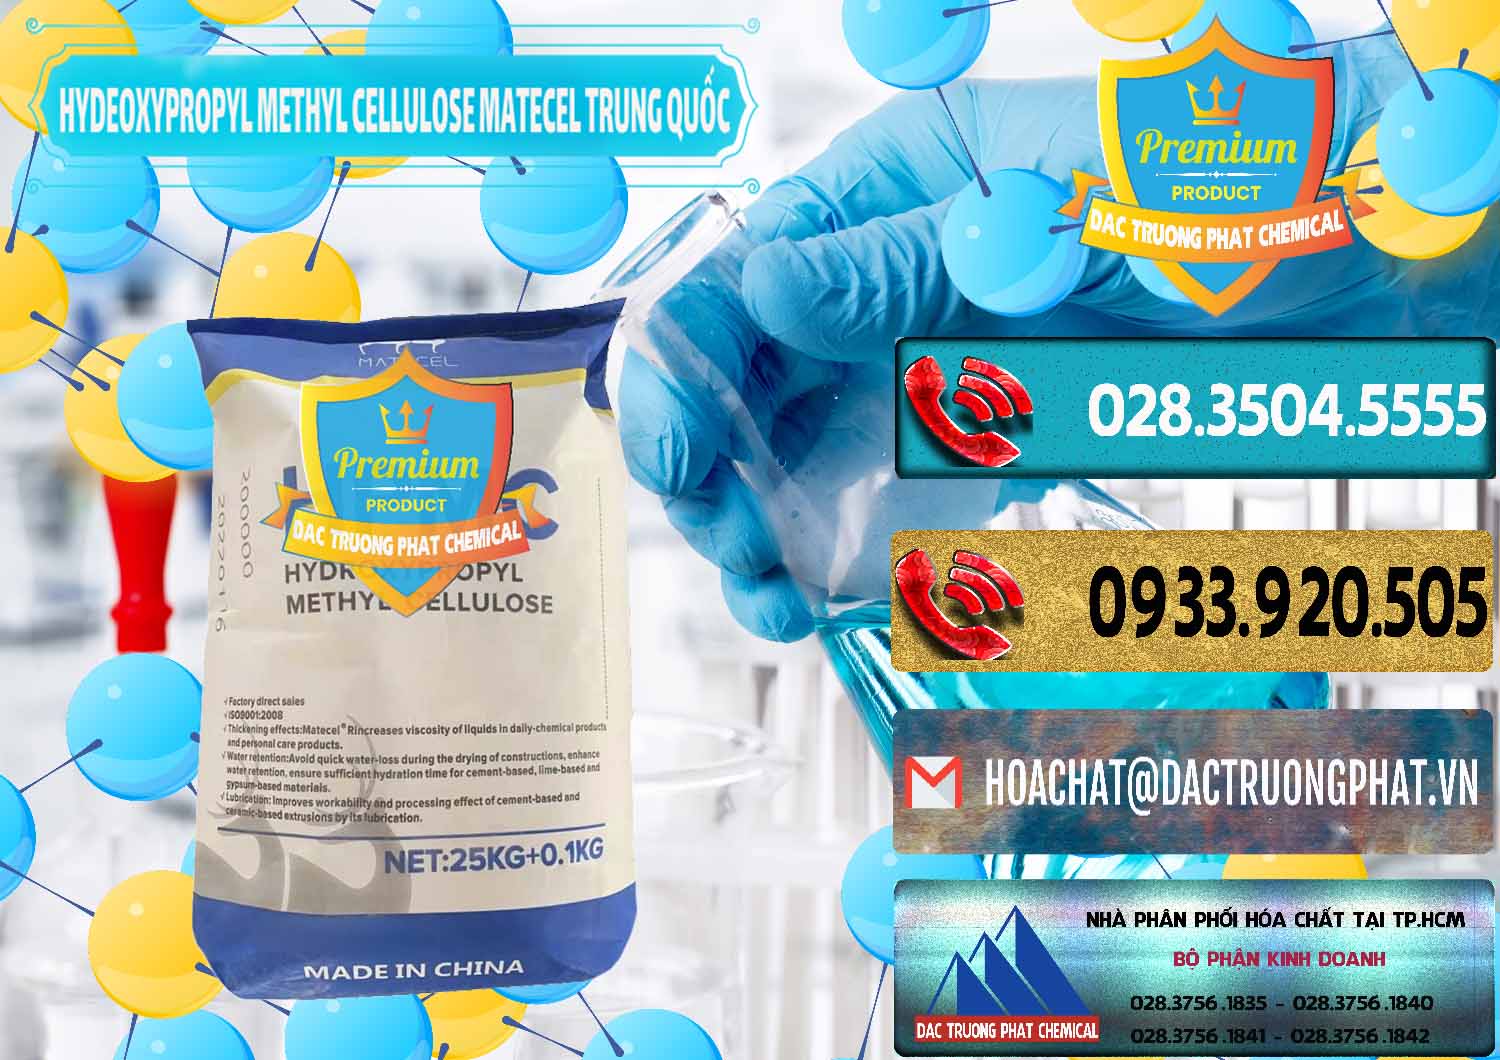 Chuyên bán và cung ứng Chất Tạo Đặc HPMC - Hydroxypropyl Methyl Cellulose Matecel Trung Quốc China - 0396 - Cty chuyên phân phối _ nhập khẩu hóa chất tại TP.HCM - hoachatdetnhuom.com